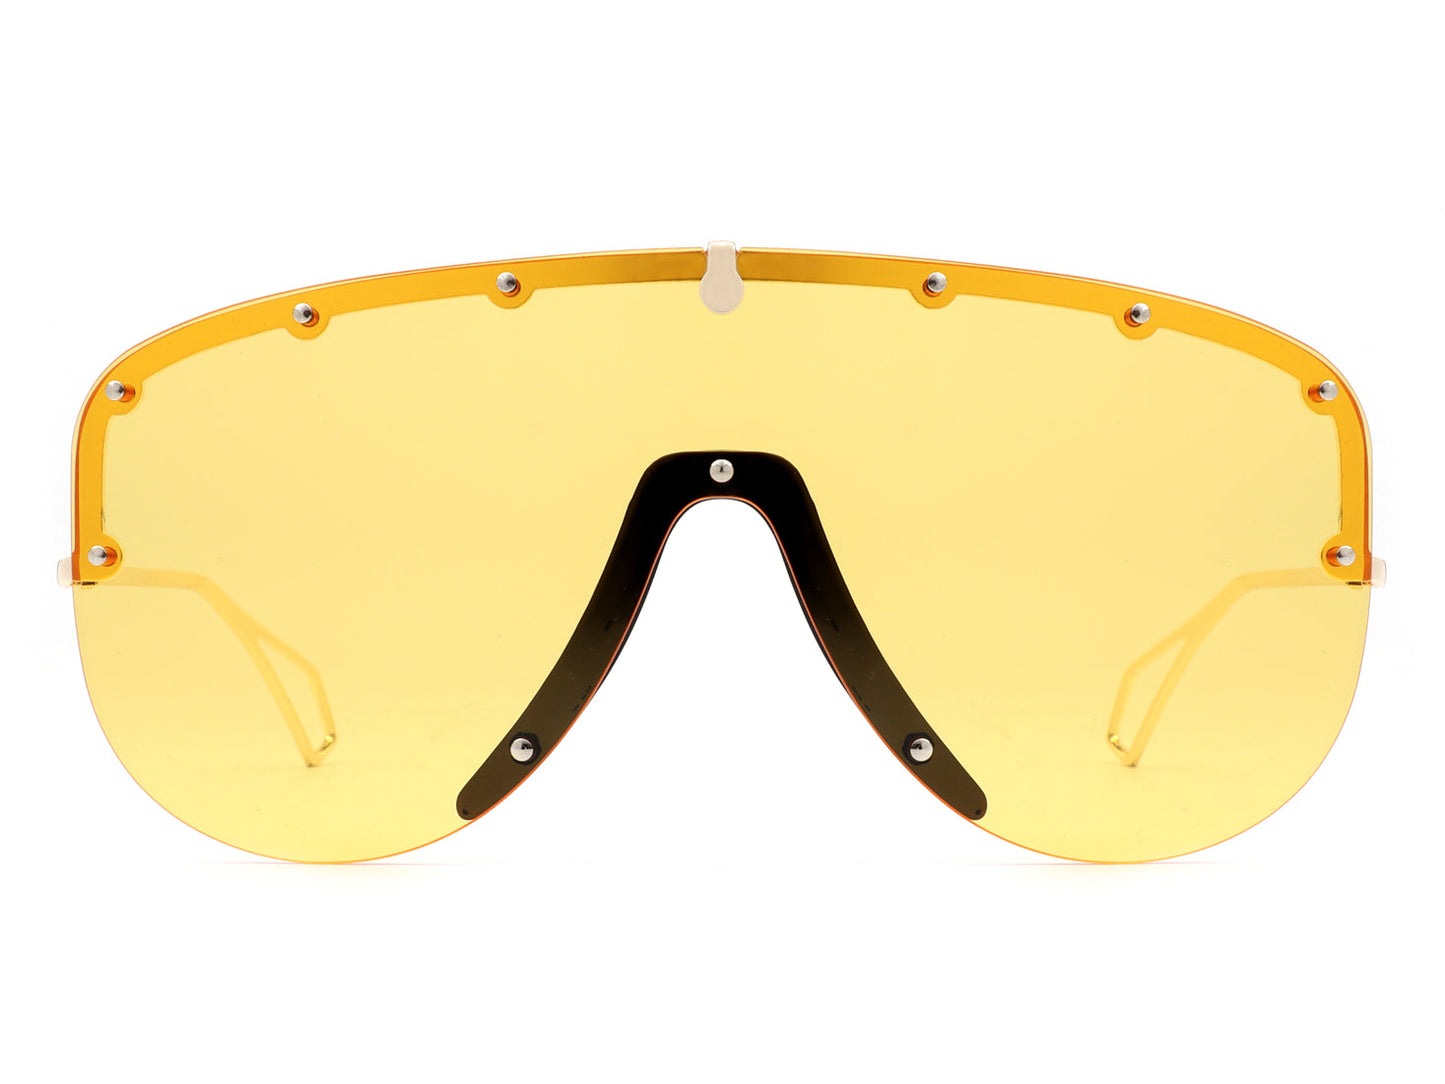 yellow aviator sunglasses